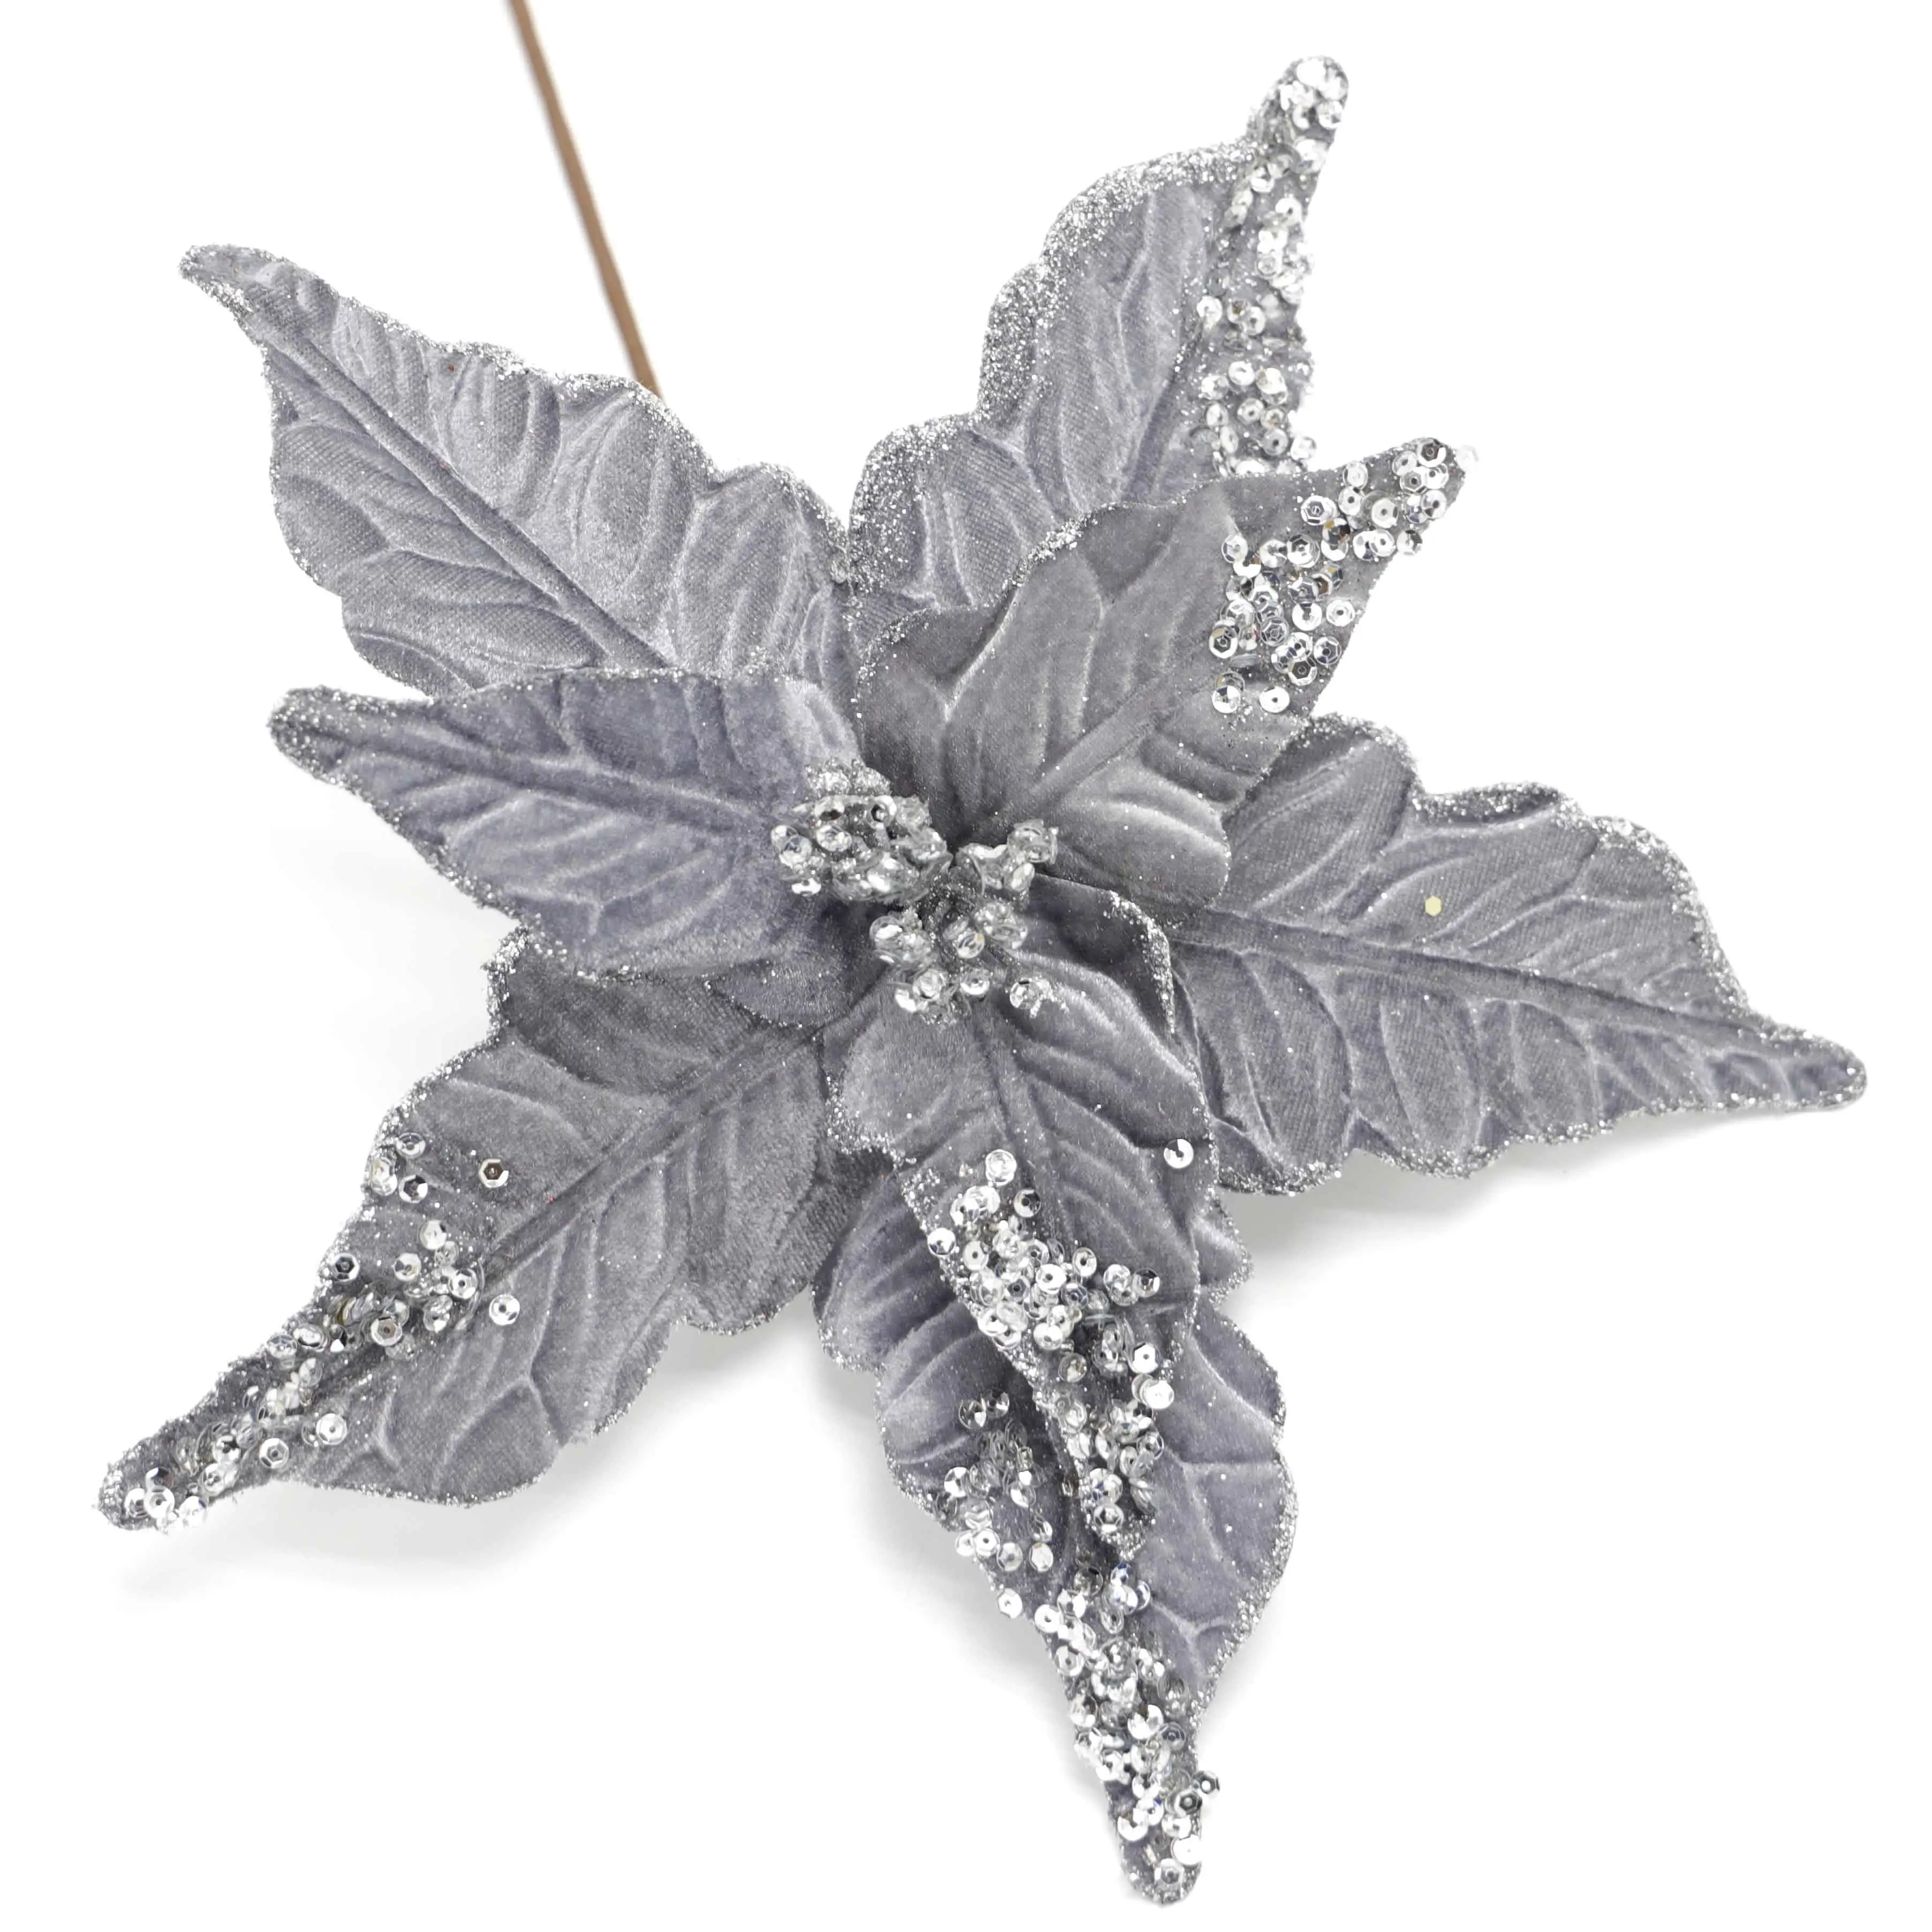 Stella di natale decorativa del tessuto d'argento dello zecchino di scintillio floreale artificiale ampiamente usato degli ornamenti della porta di natale del fiore